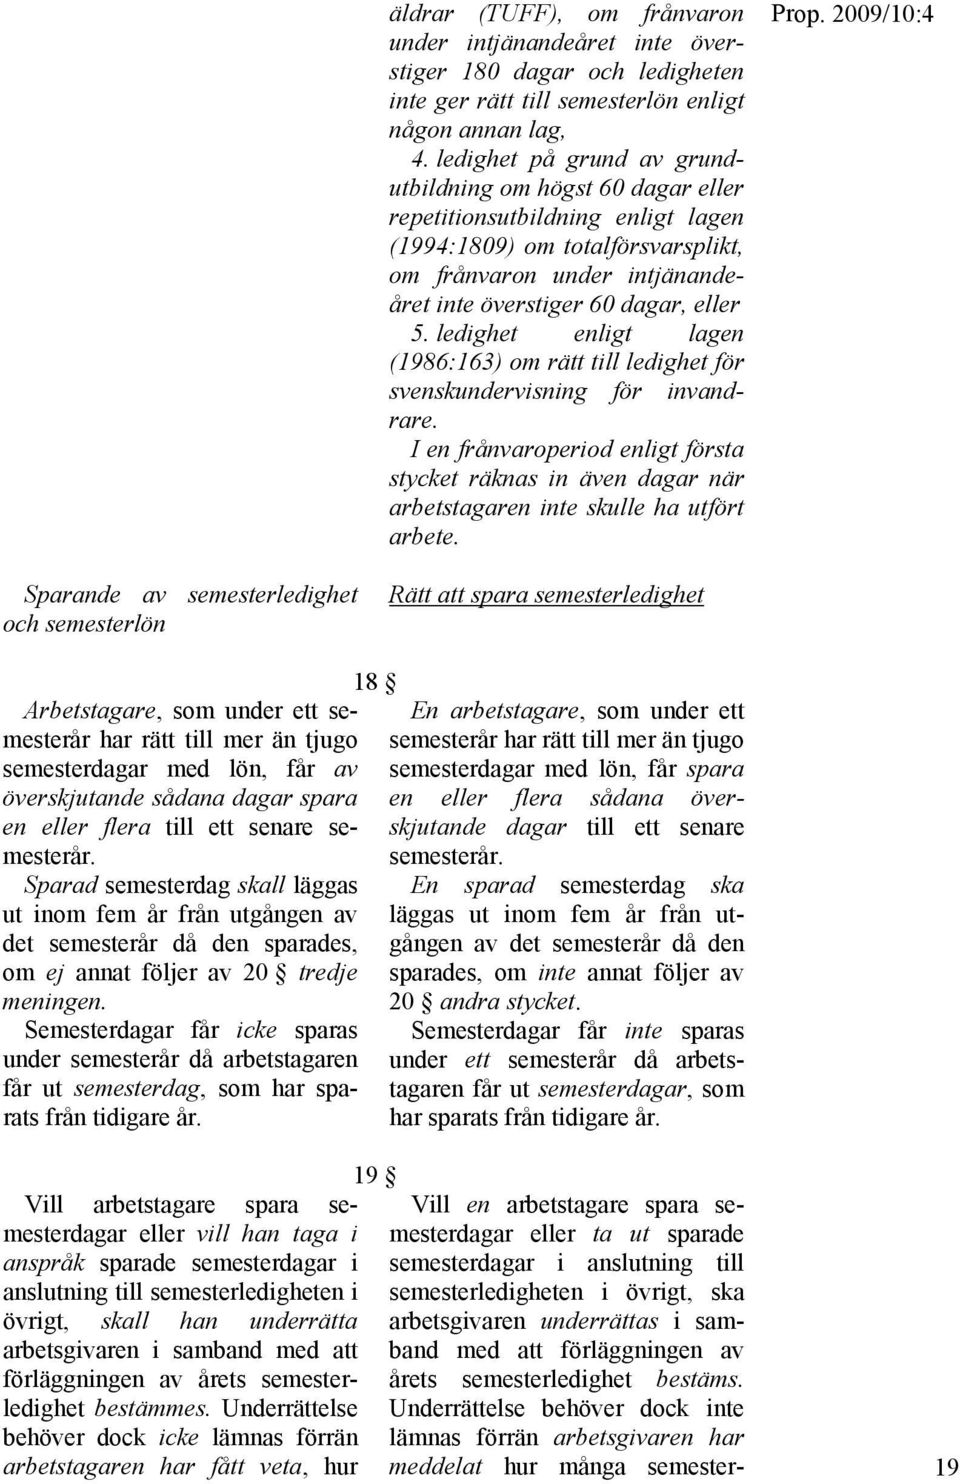 ledighet enligt lagen (1986:163) om rätt till ledighet för svenskundervisning för invandrare.